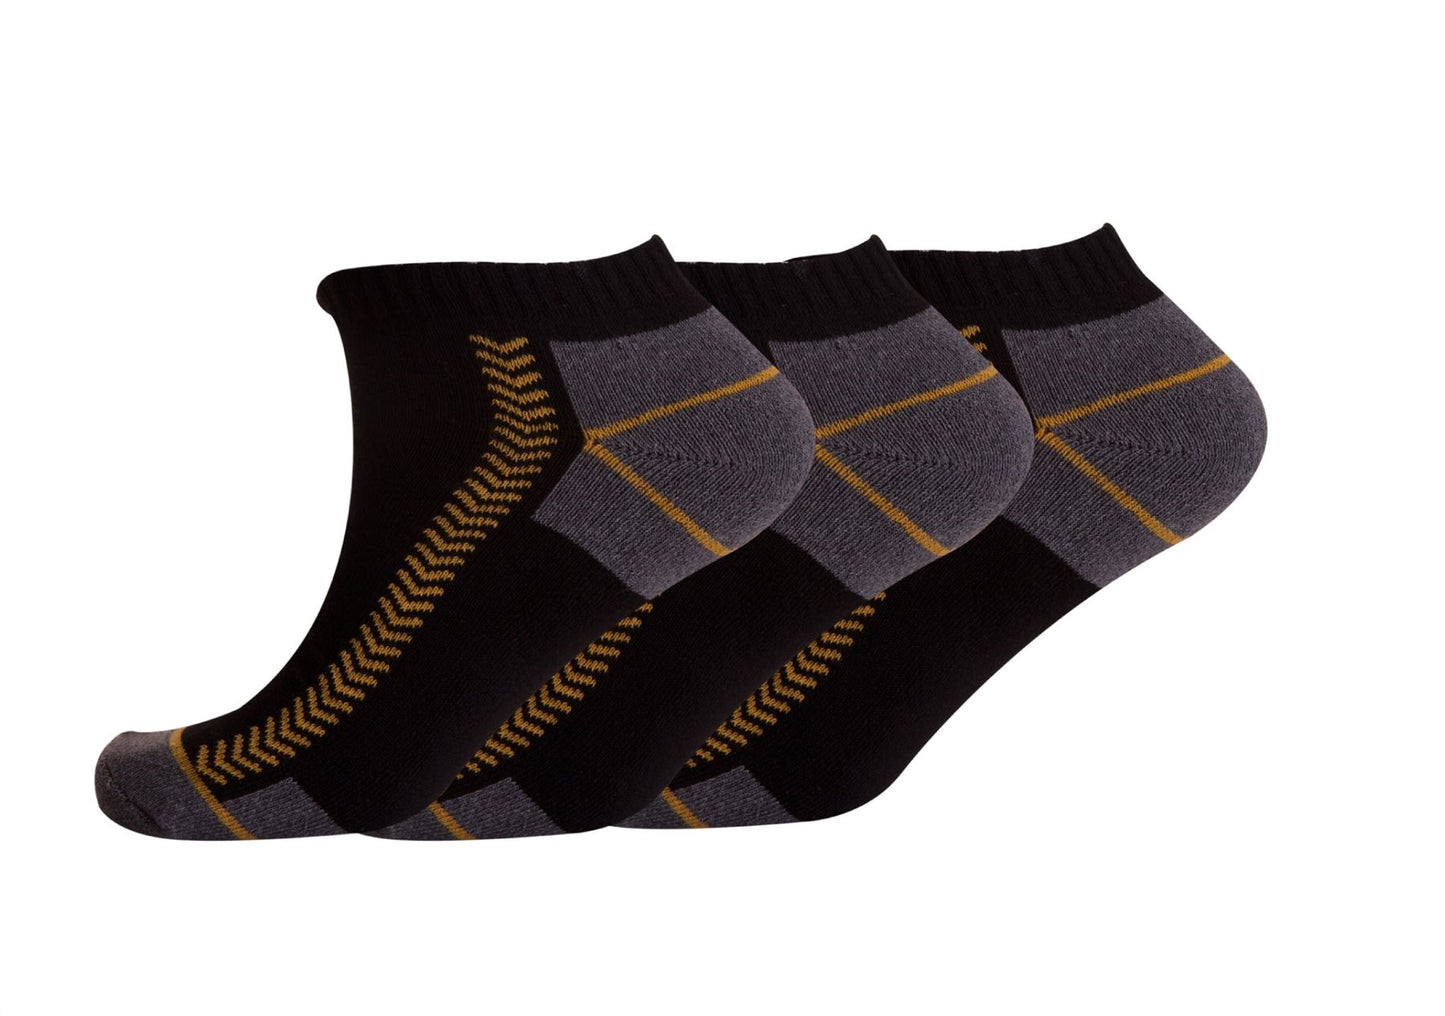 Botte de travail de sport en plein air, semelle douce et confortable, chaussettes d'entraînement à talon, noir/gris, UK 6-11